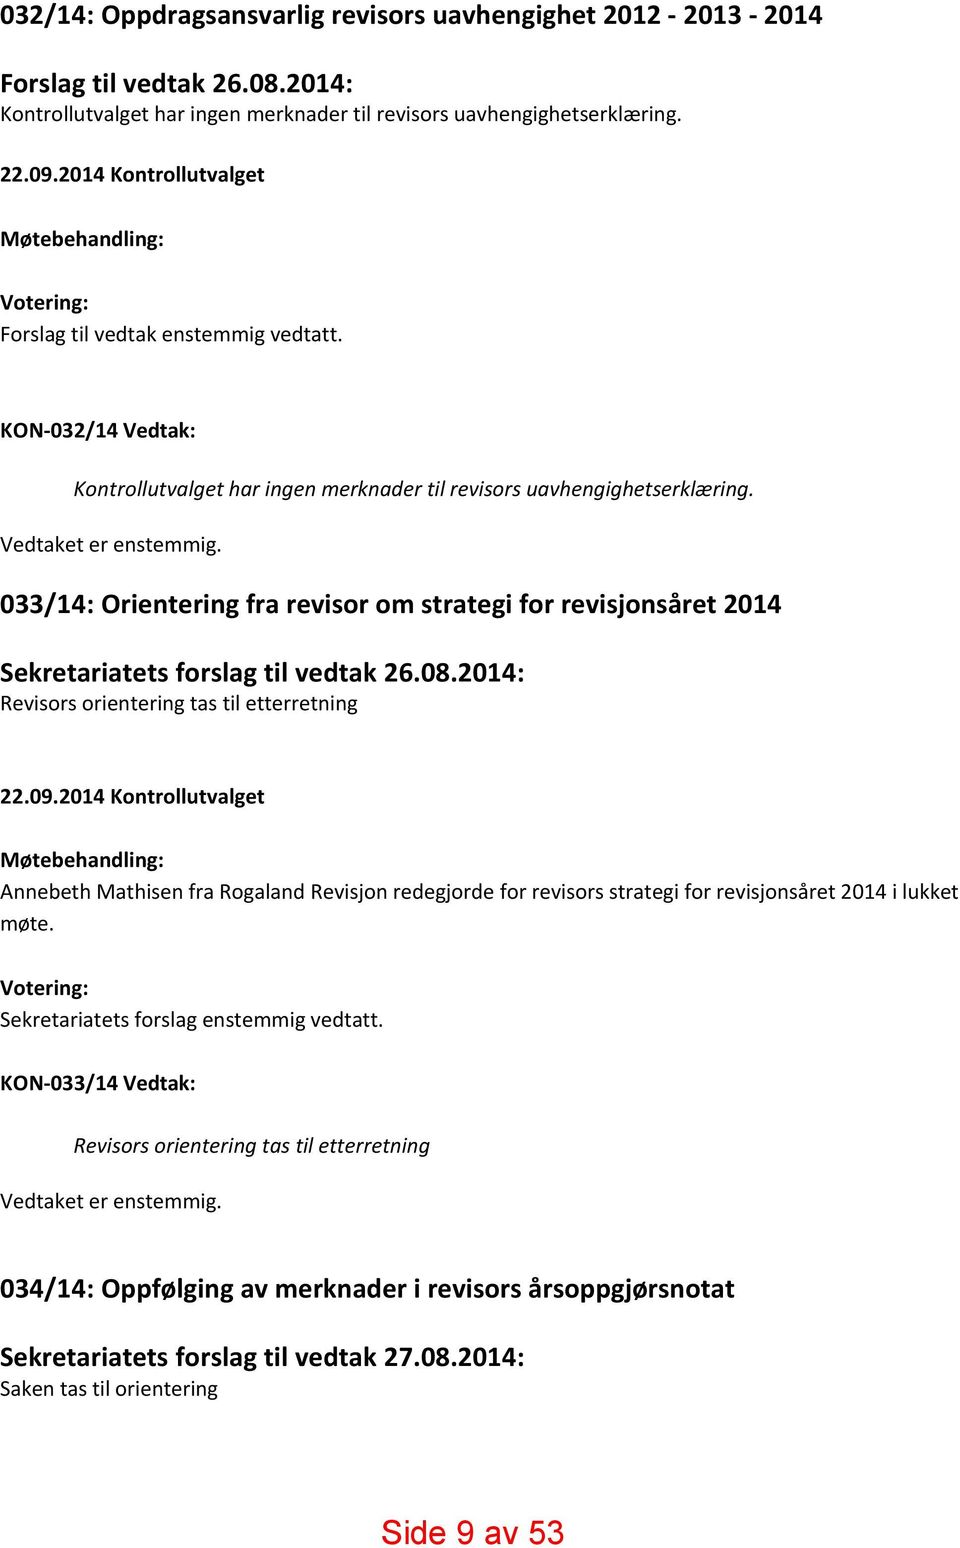 Vedtaket er enstemmig. 033/14: Orientering fra revisor om strategi for revisjonsåret 2014 Sekretariatets forslag til vedtak 26.08.2014: Revisors orientering tas til etterretning 22.09.